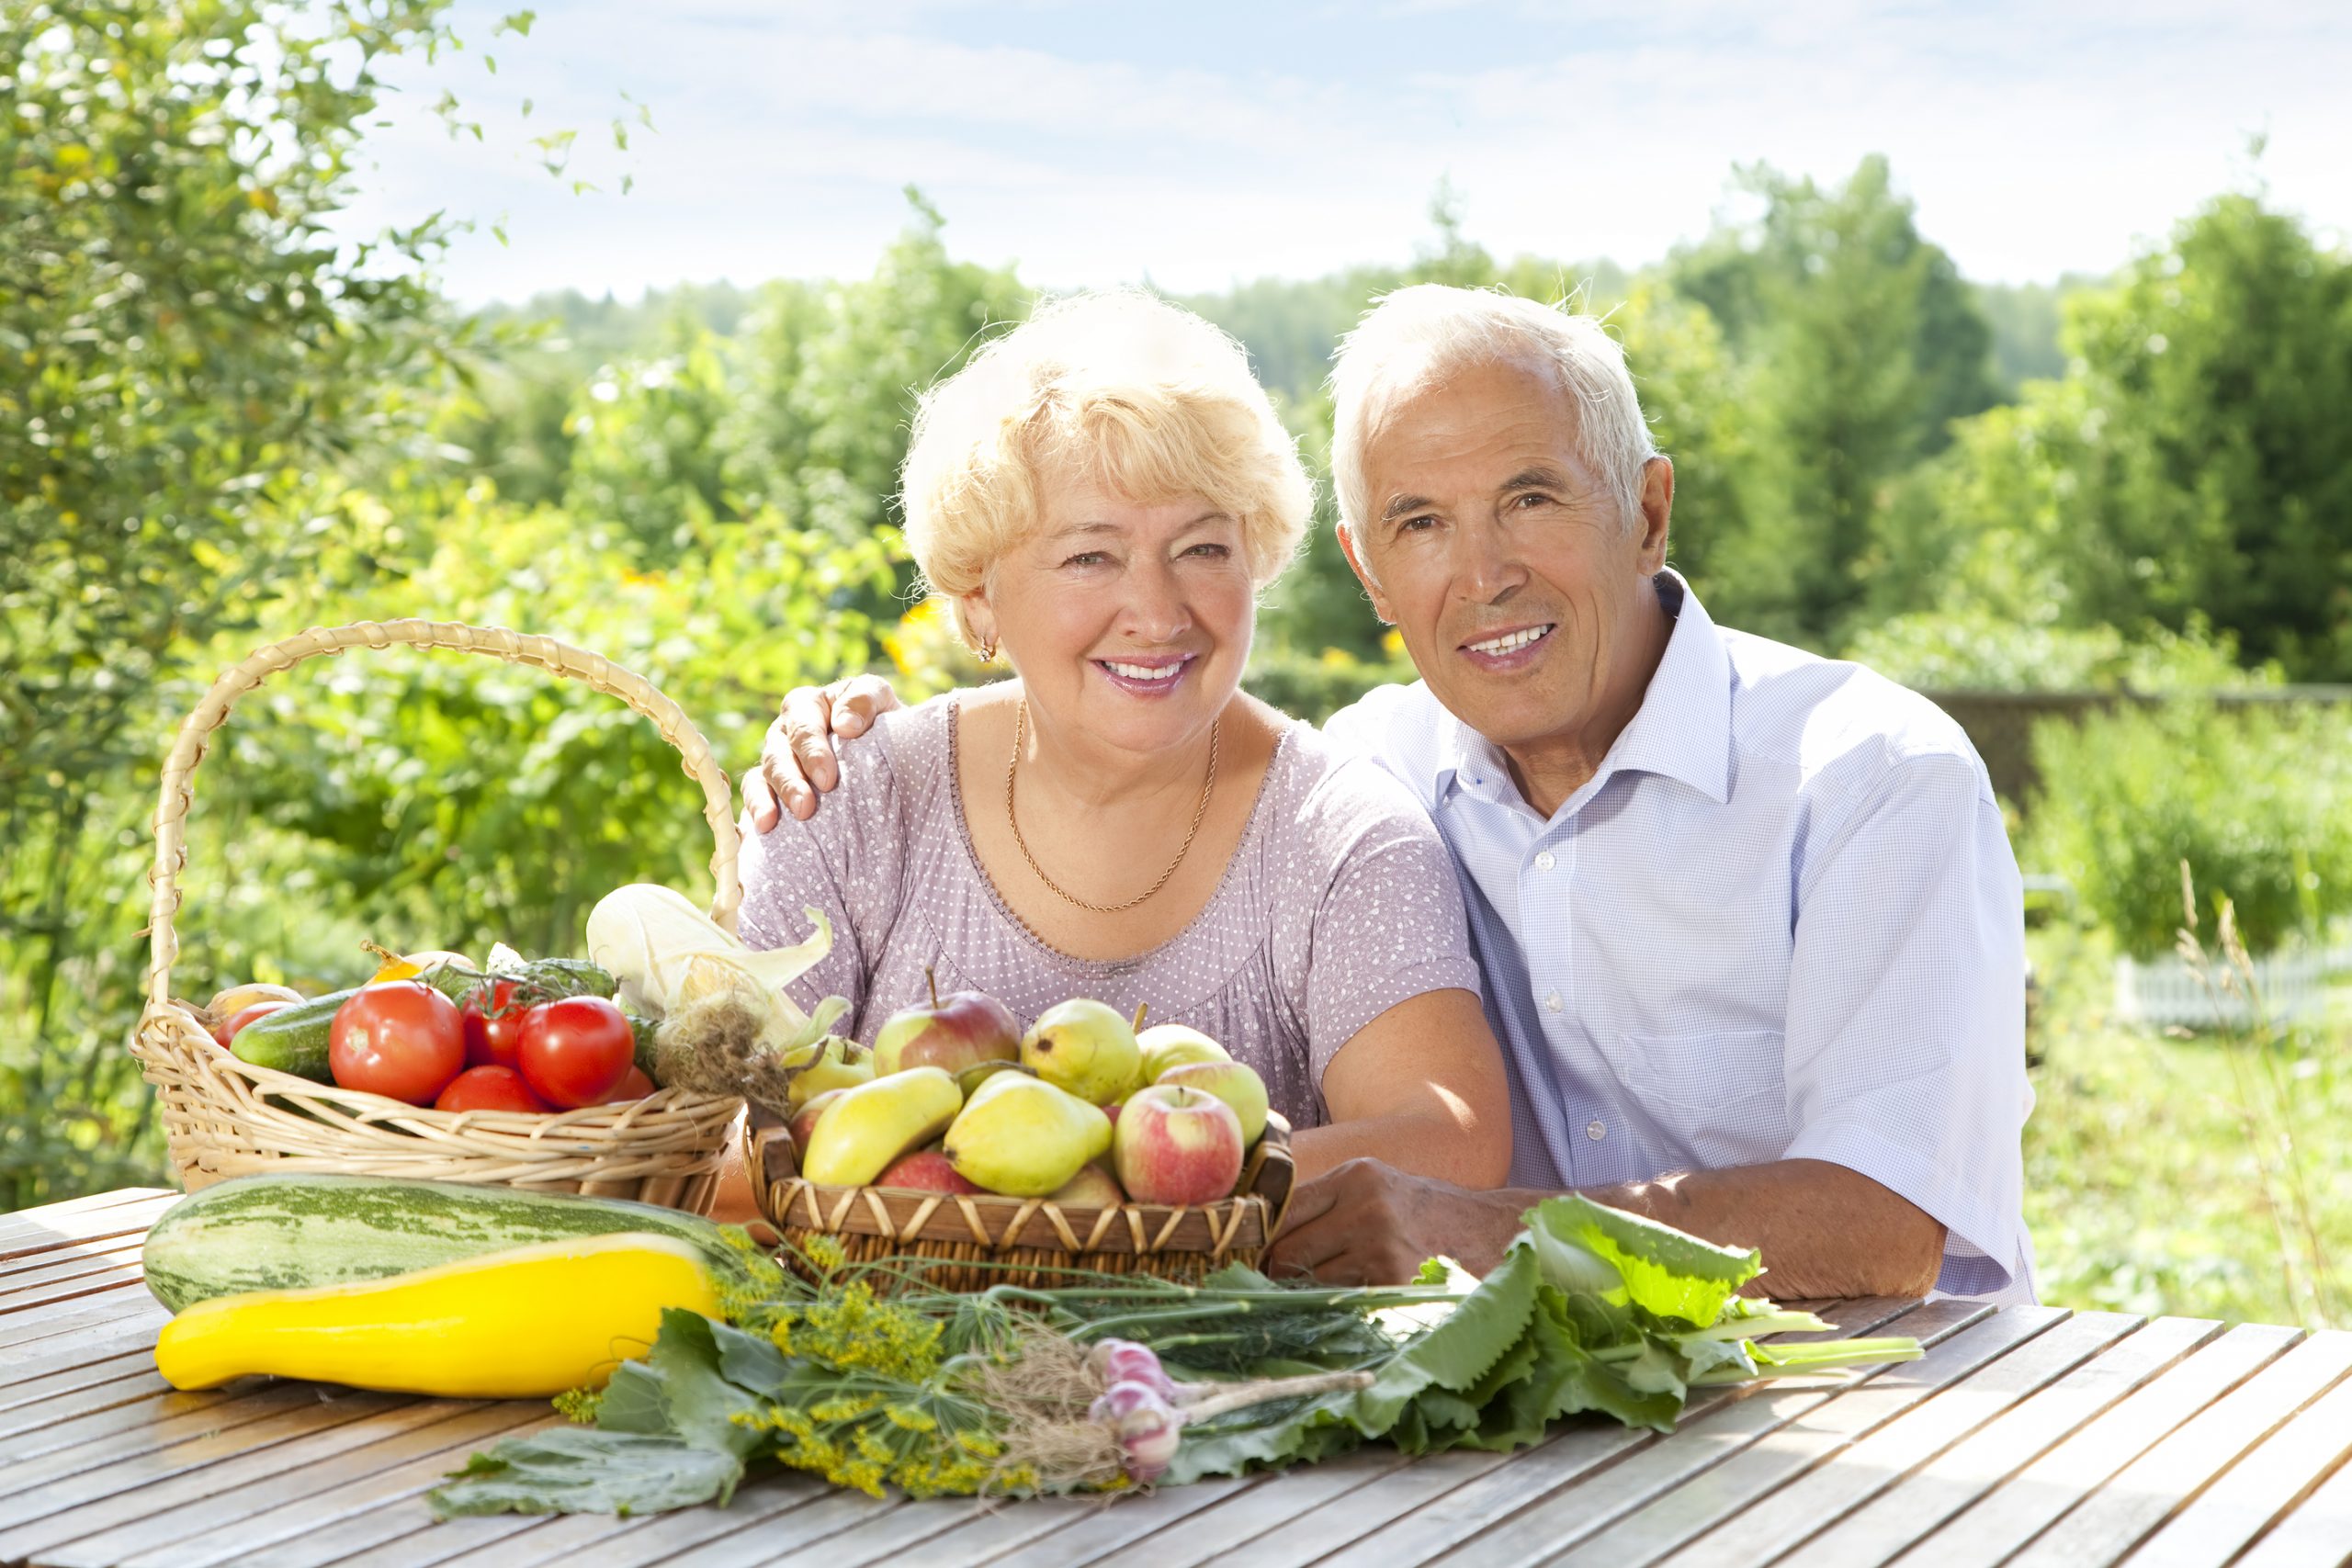 Healthy aging strategies for longevity